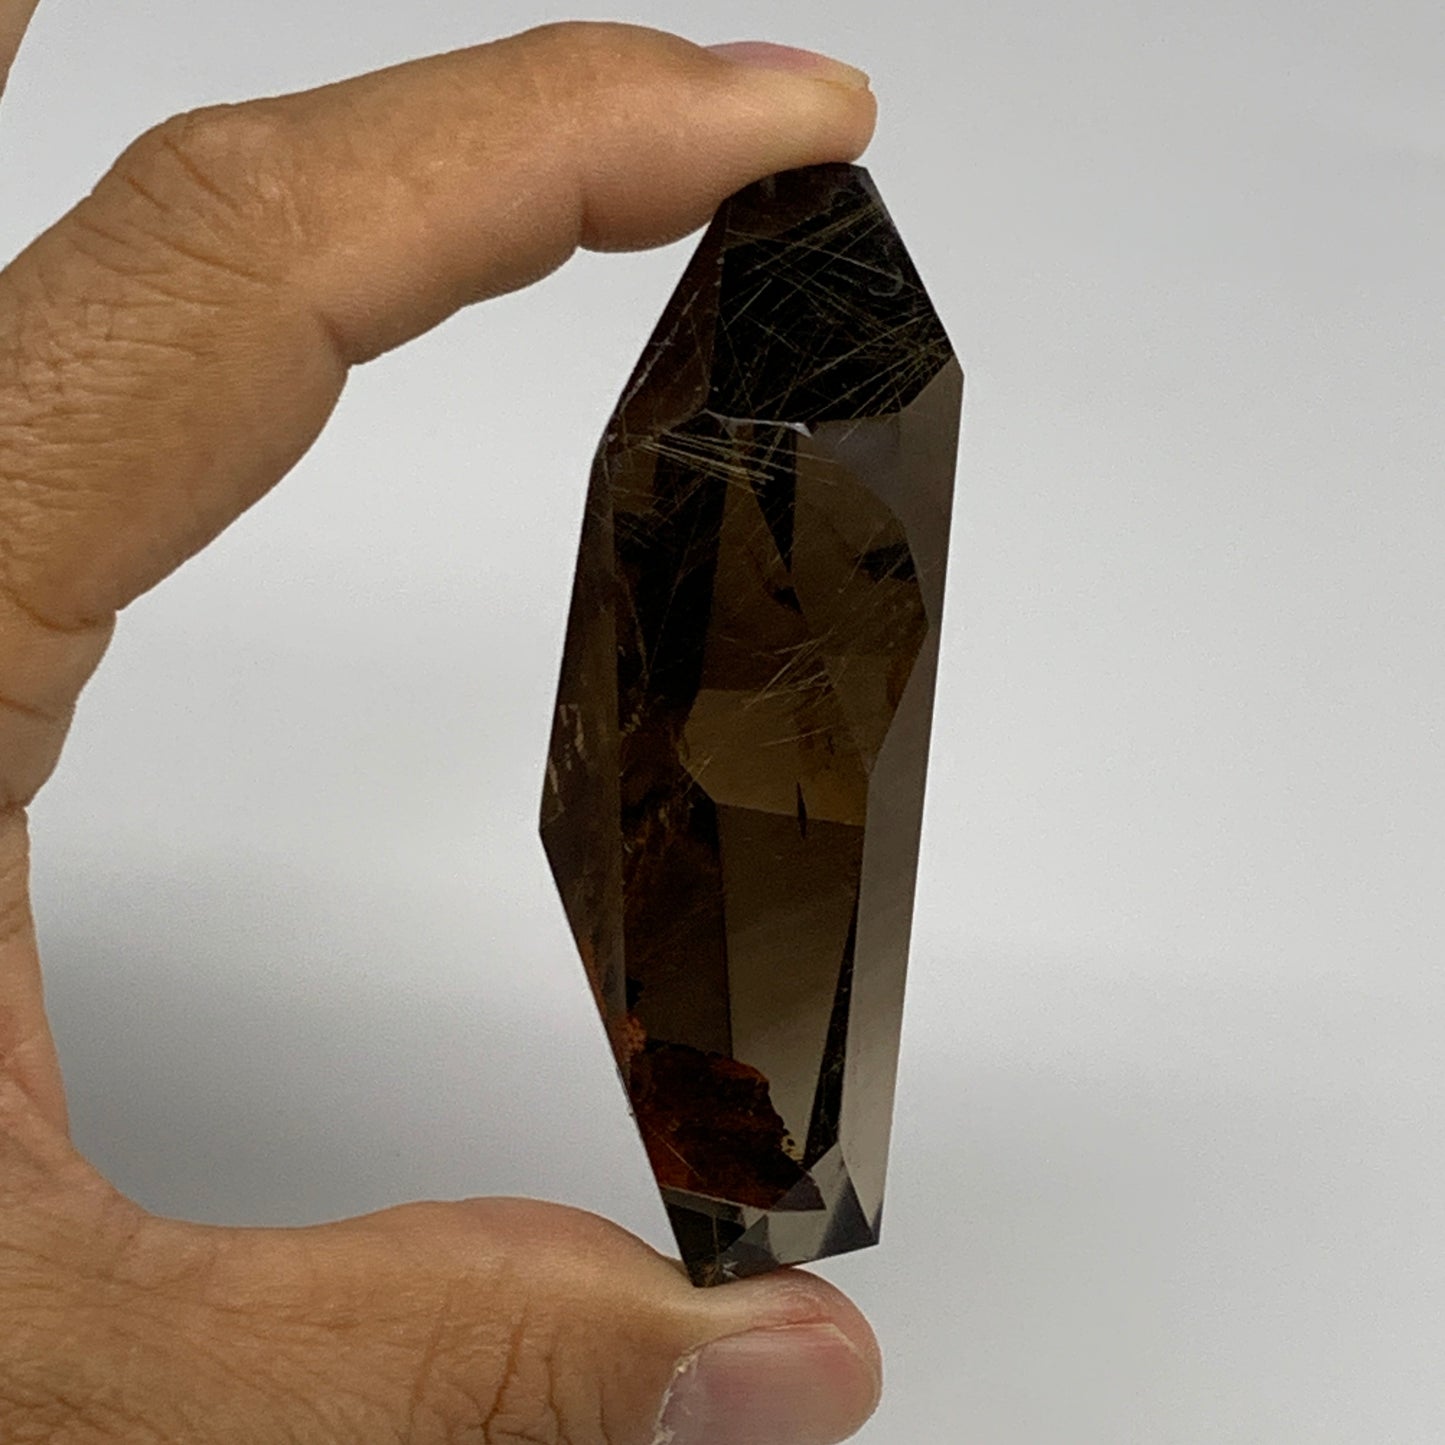 94.9g, 2.9"x1.7"x0.9", Natural Golden Rutile Quartz Crystal Chunk from Brazil,B2